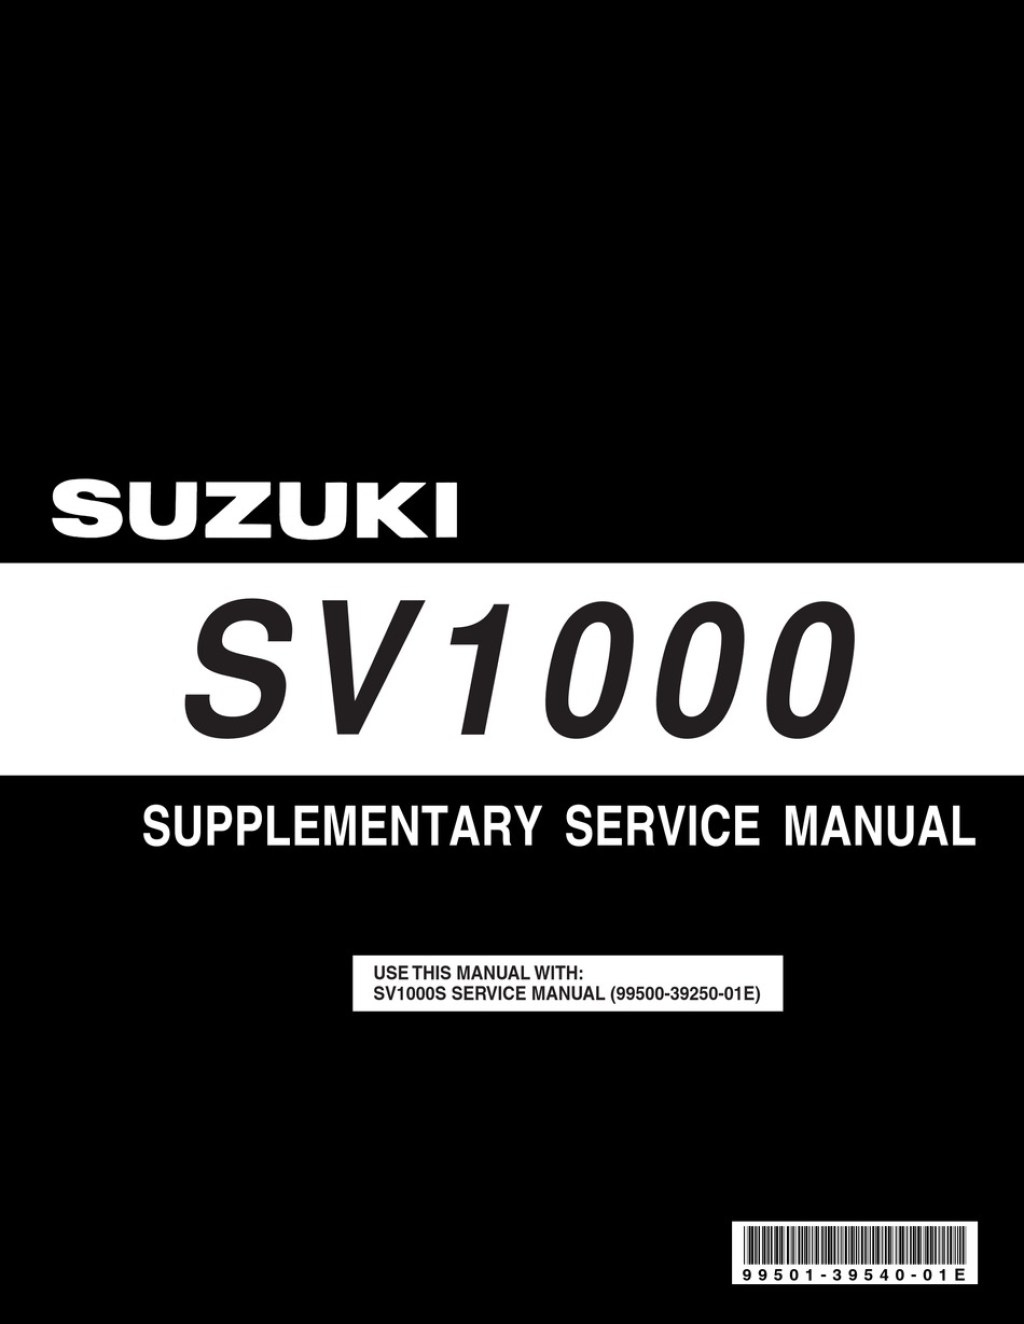 suzuki sv1000 service manual download - SUZUKI SV SERVICE MANUAL Pdf Download  ManualsLib